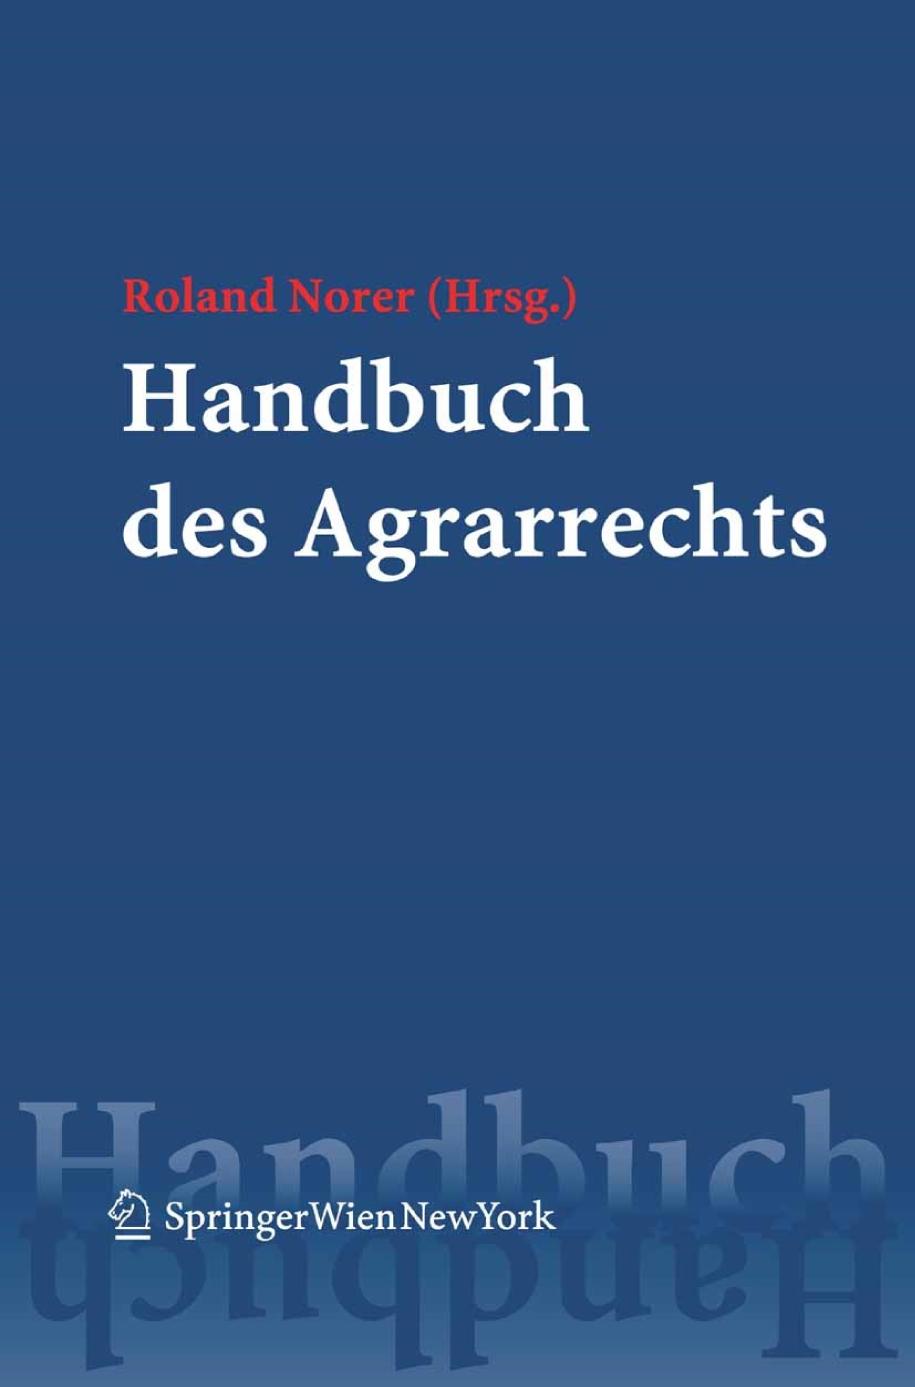 Handbuch des Agrarrechts.